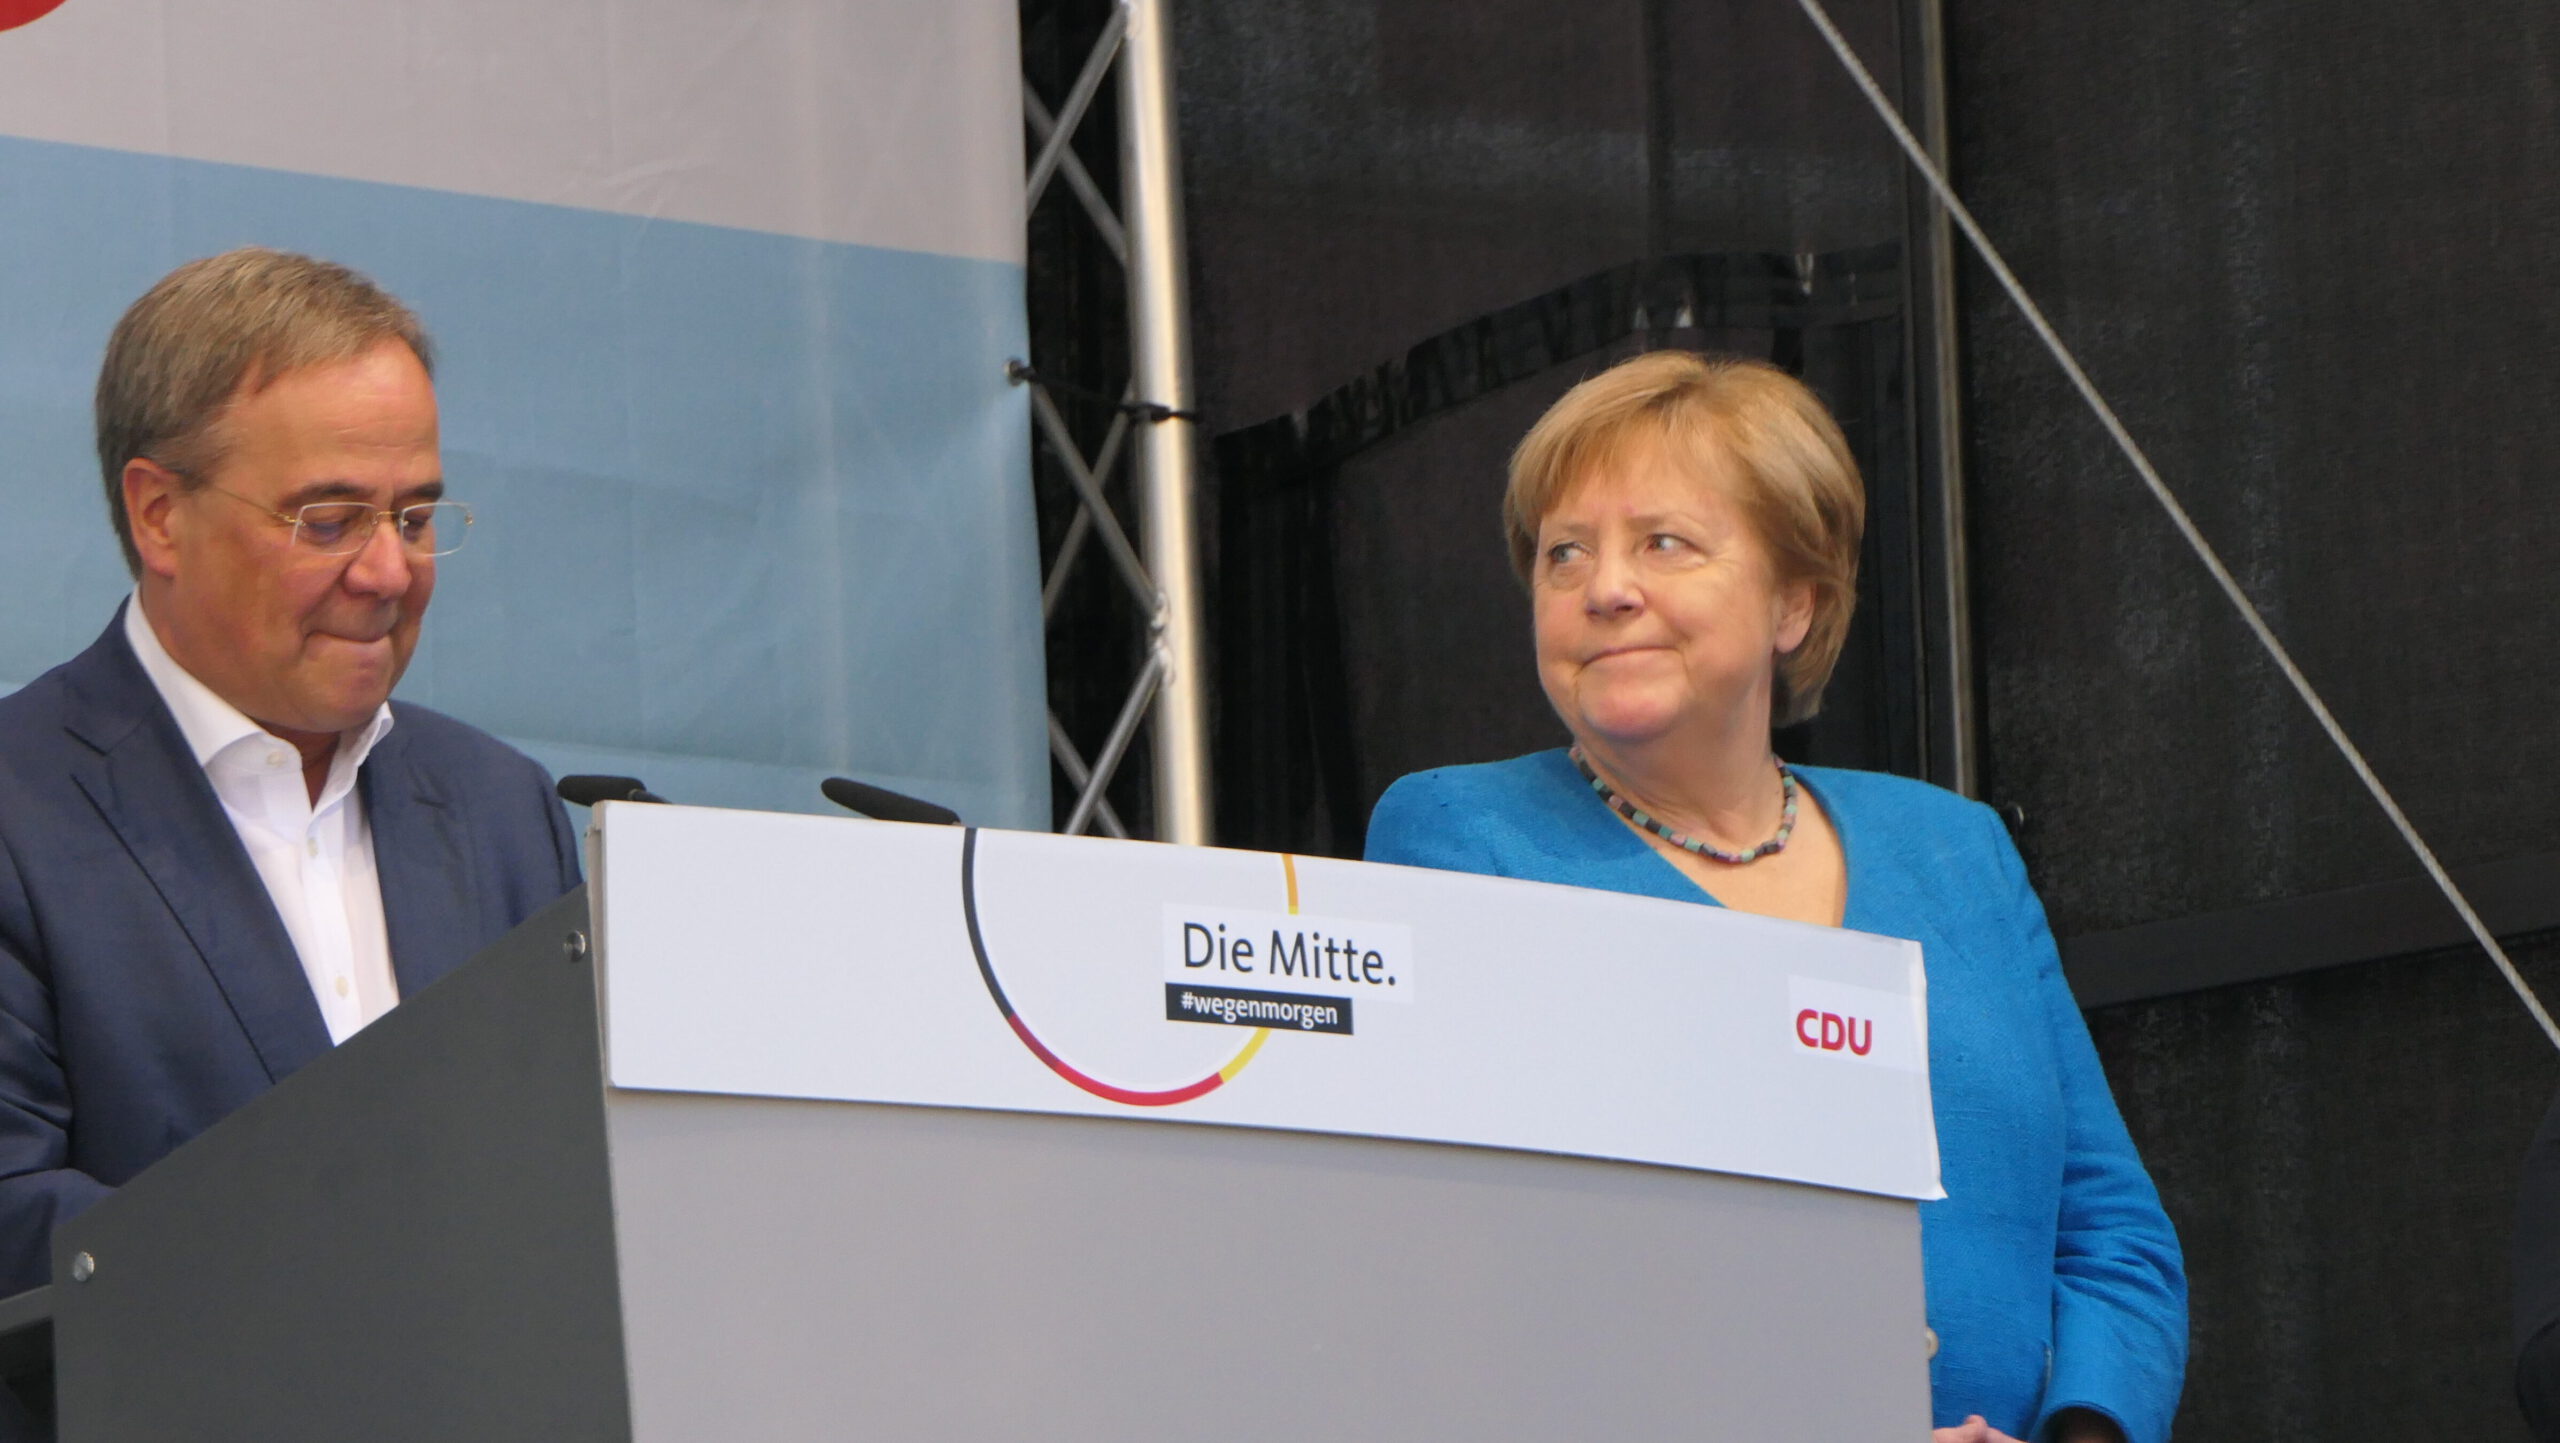 Begleitet von Protest und Printen: Angela Merkel besucht Aachen